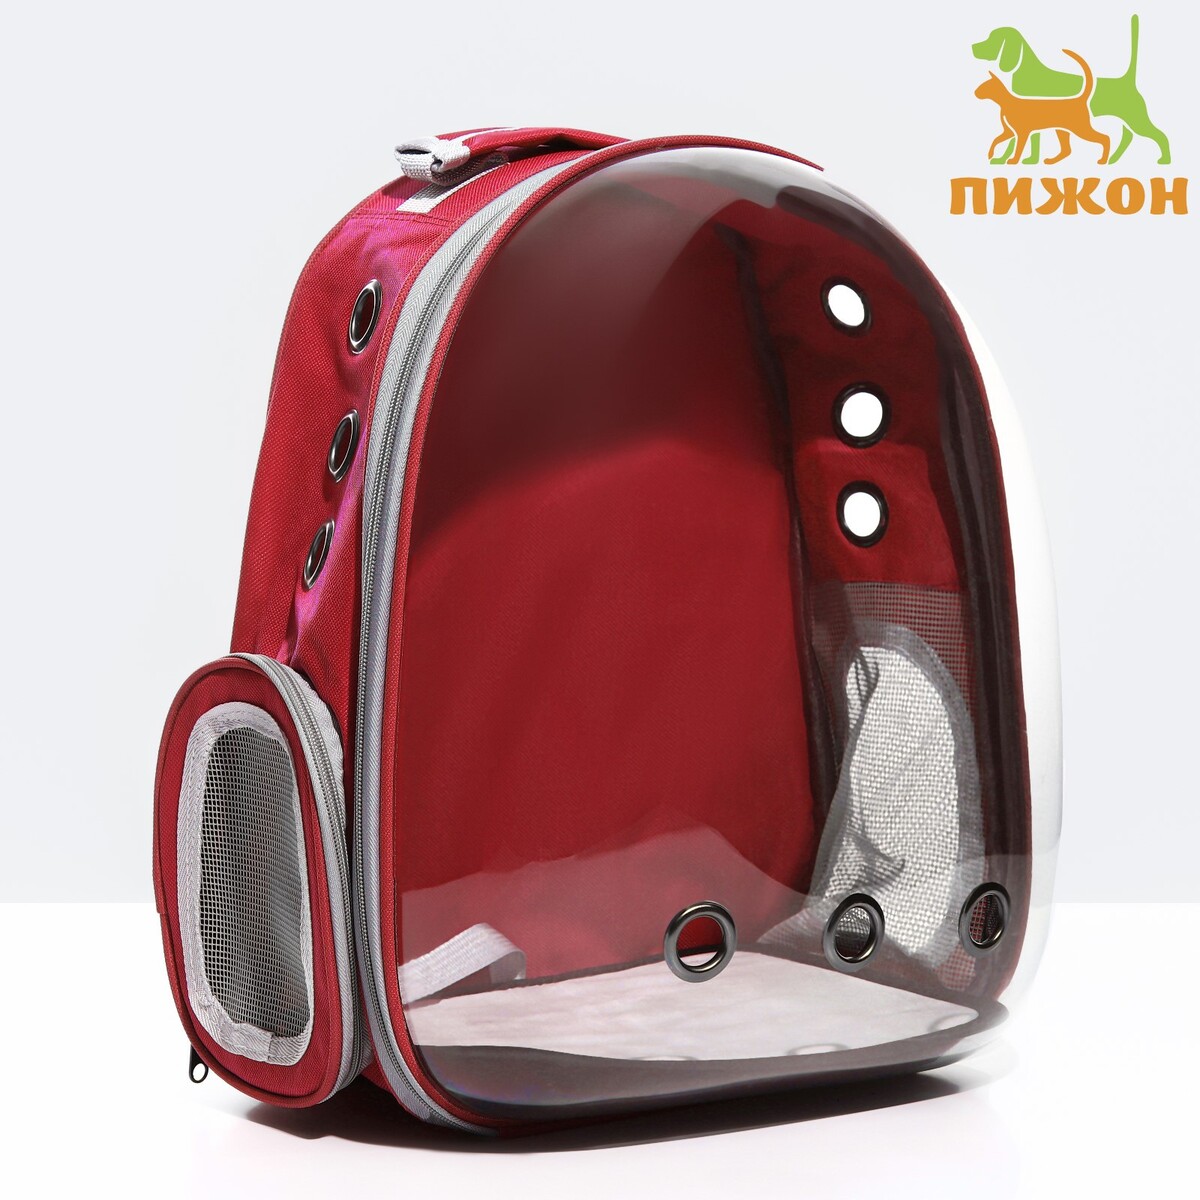 Рюкзак для переноски животных прозрачный, 31 х 28 х 42 см, красный собака иллюстрированное руководство по общению с домашним питомцем